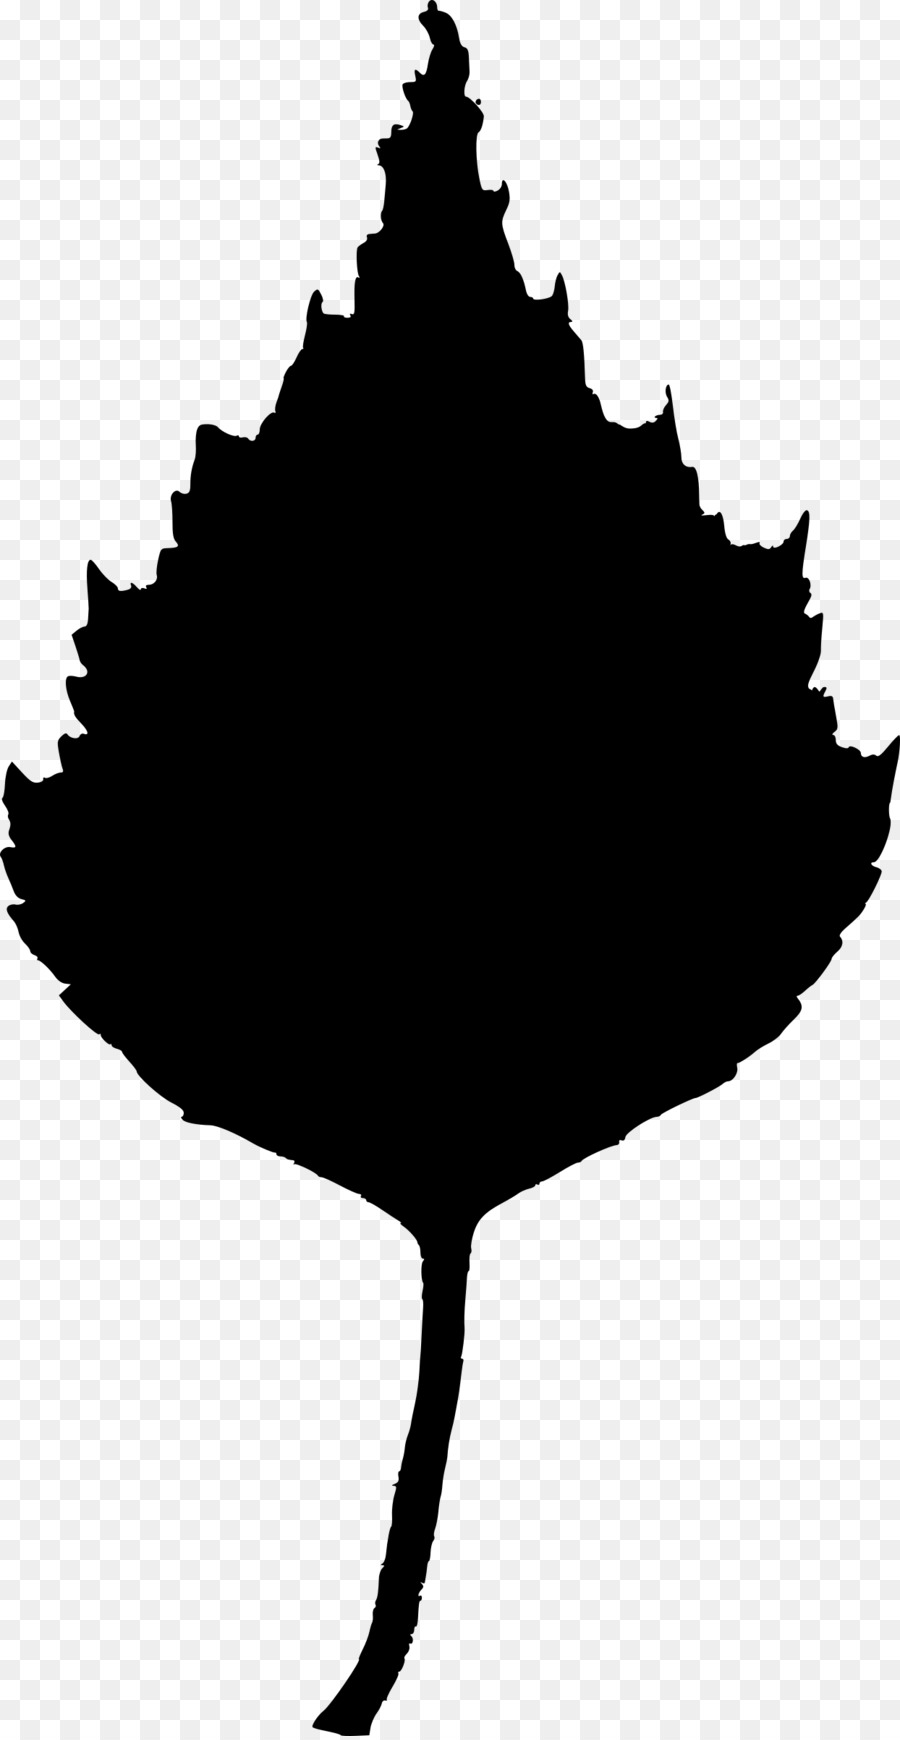 Birch Leaf Clip art - eucalyptus leaf png download - 1244*2400 - Free Transparent Birch png Download.